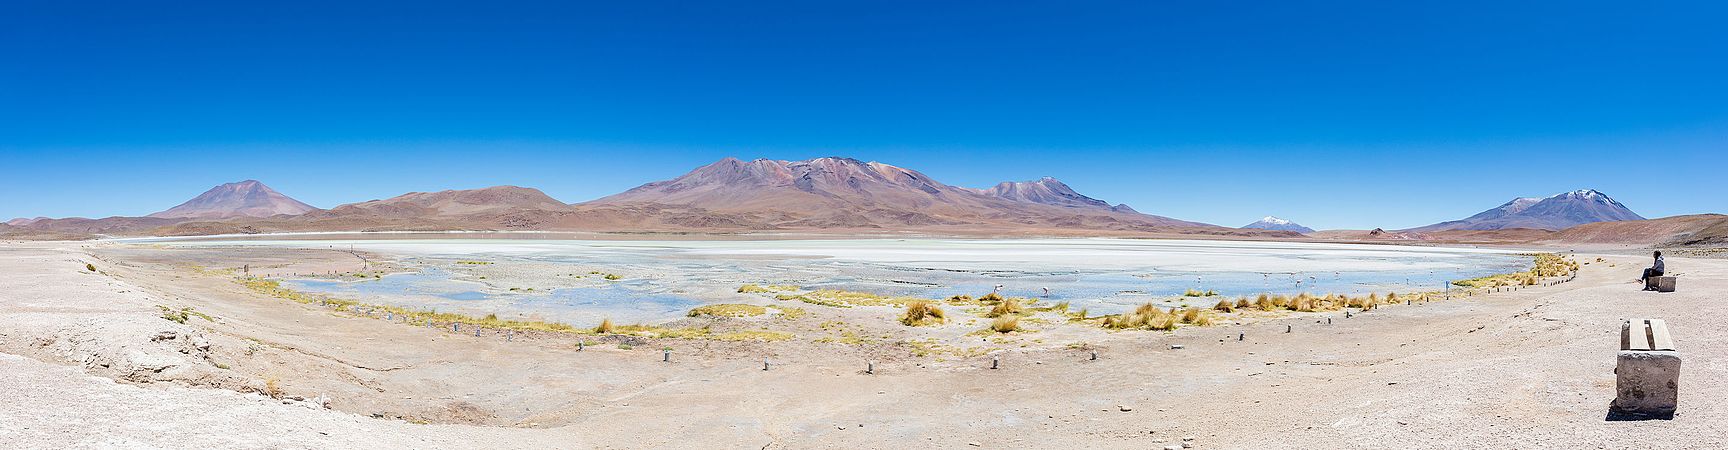 图为玻利维亚西南部北利佩斯省埃迪翁达湖全景。湖泊海拔4121米，面积3平方公里